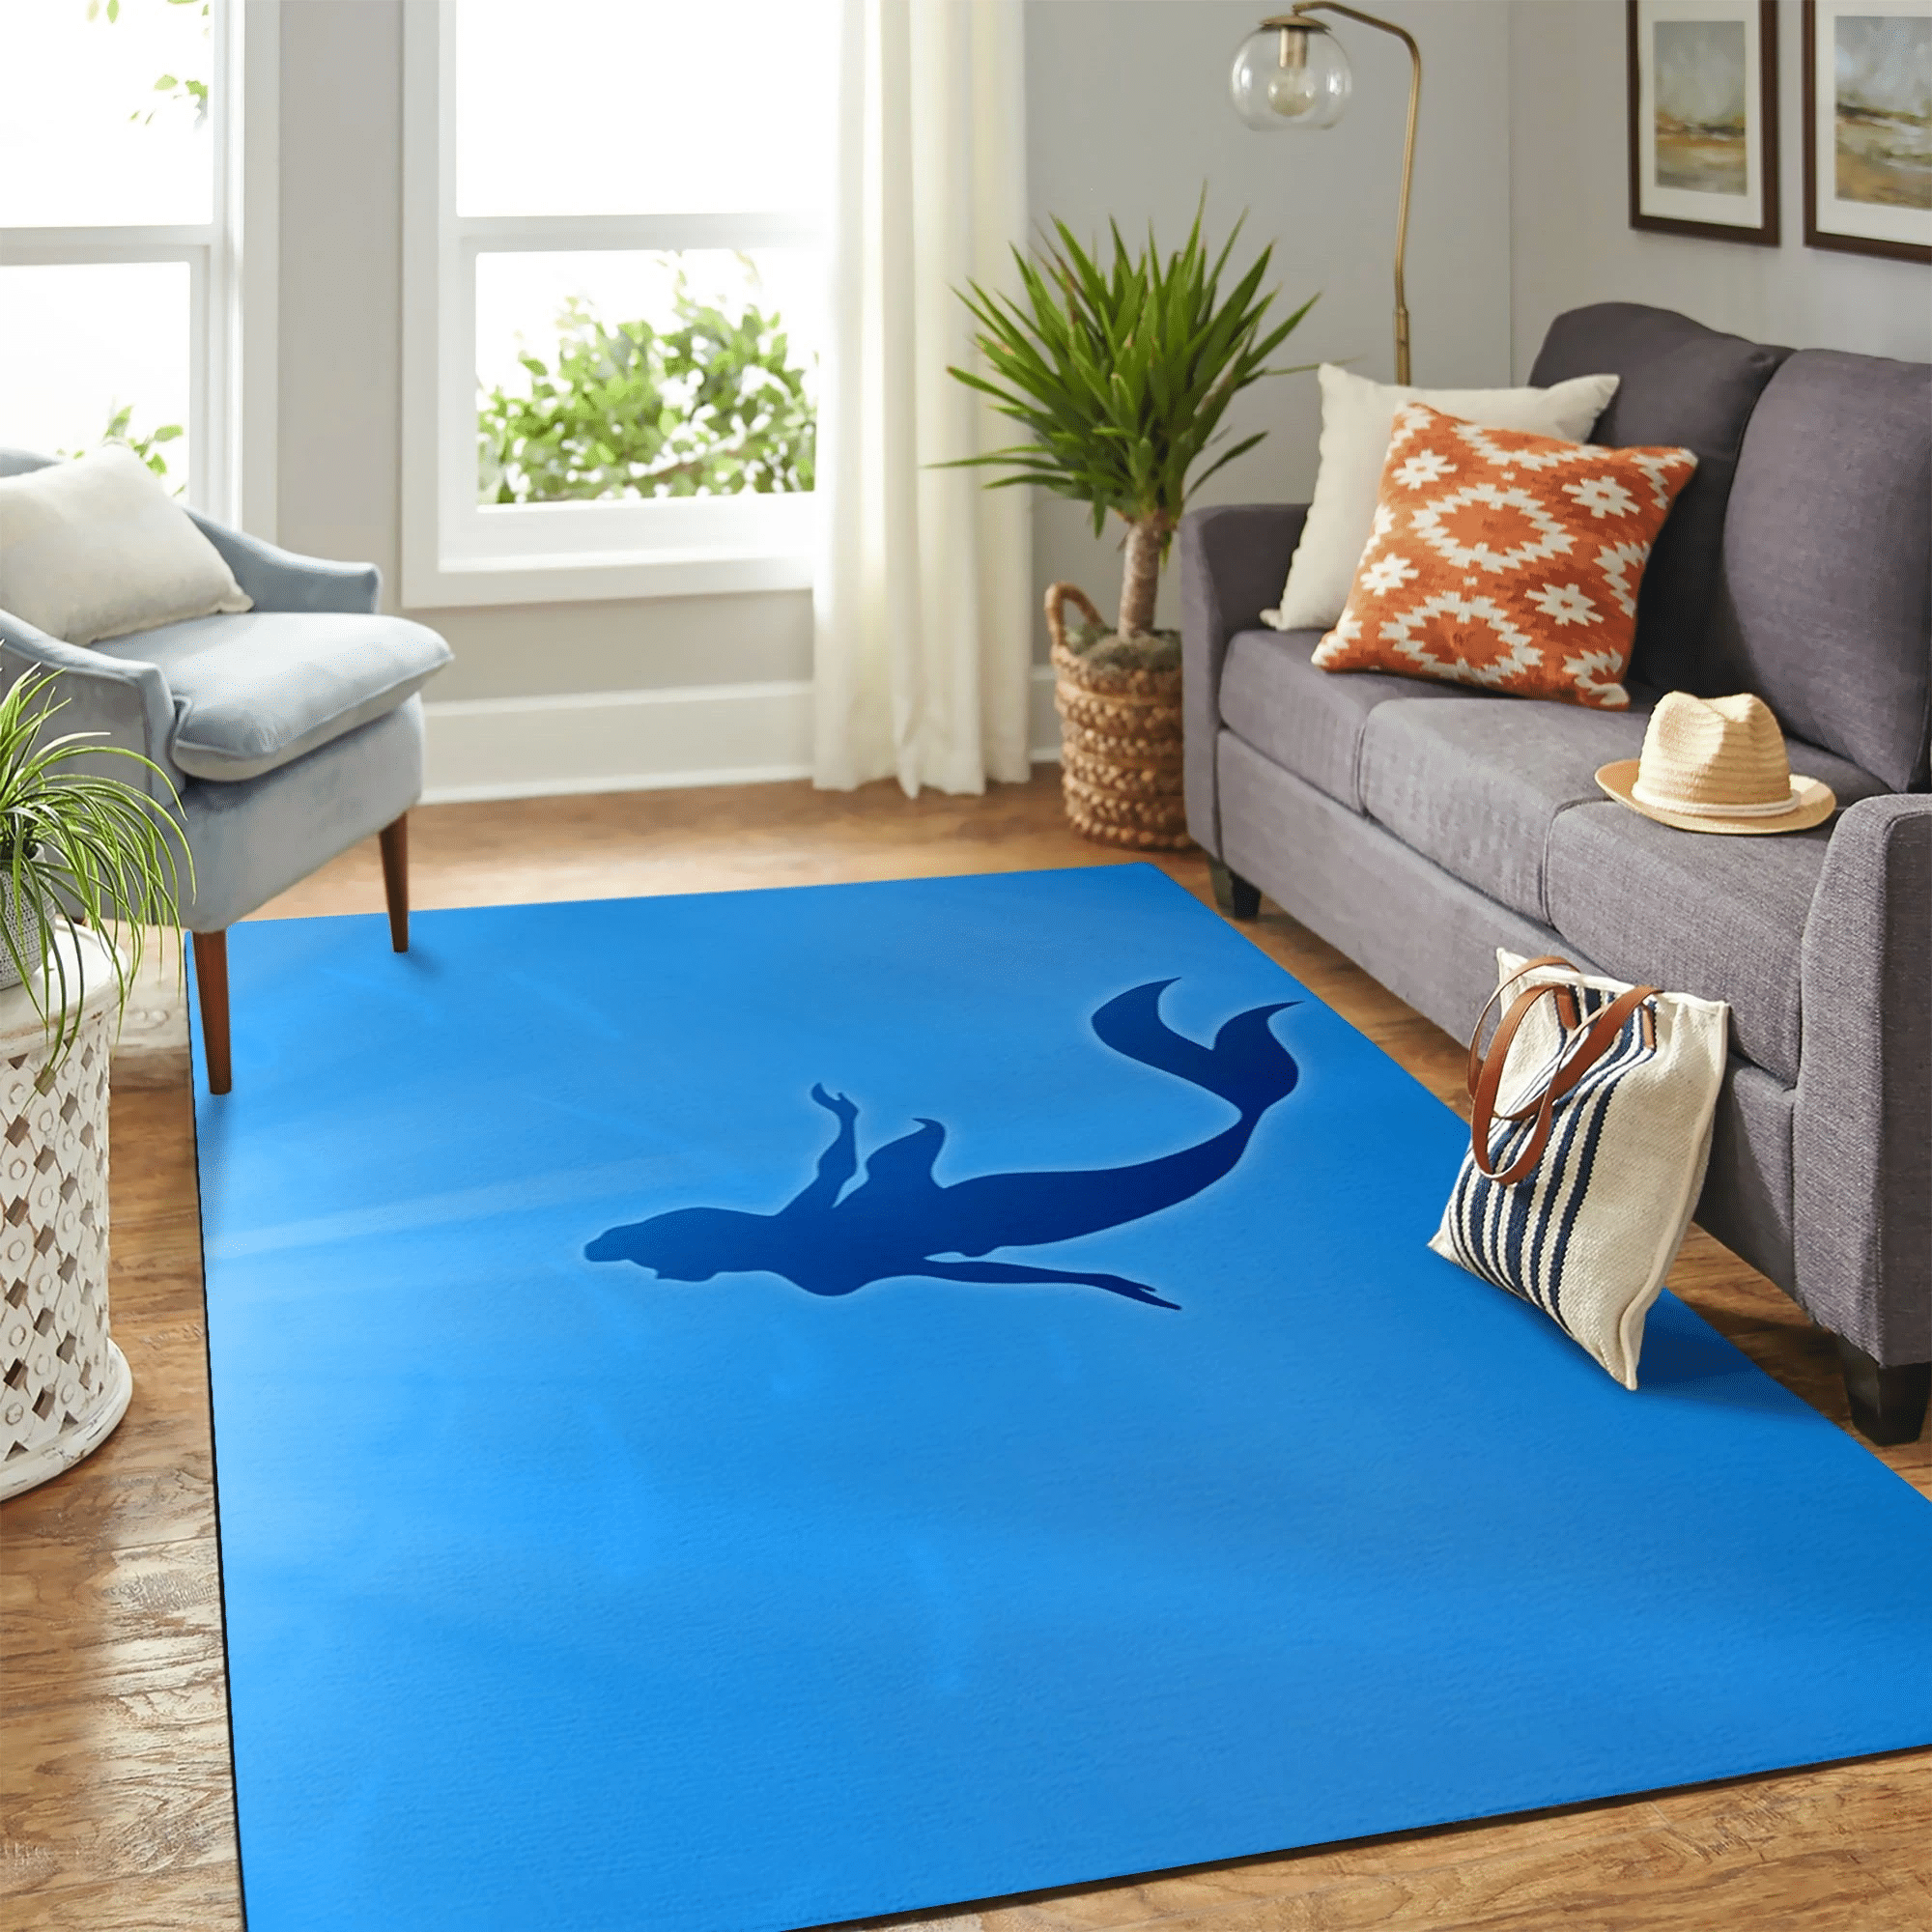 The Little Mermaid Carpet Floor Area Rug Chrismas Gift - Indoor Outdoor Rugs